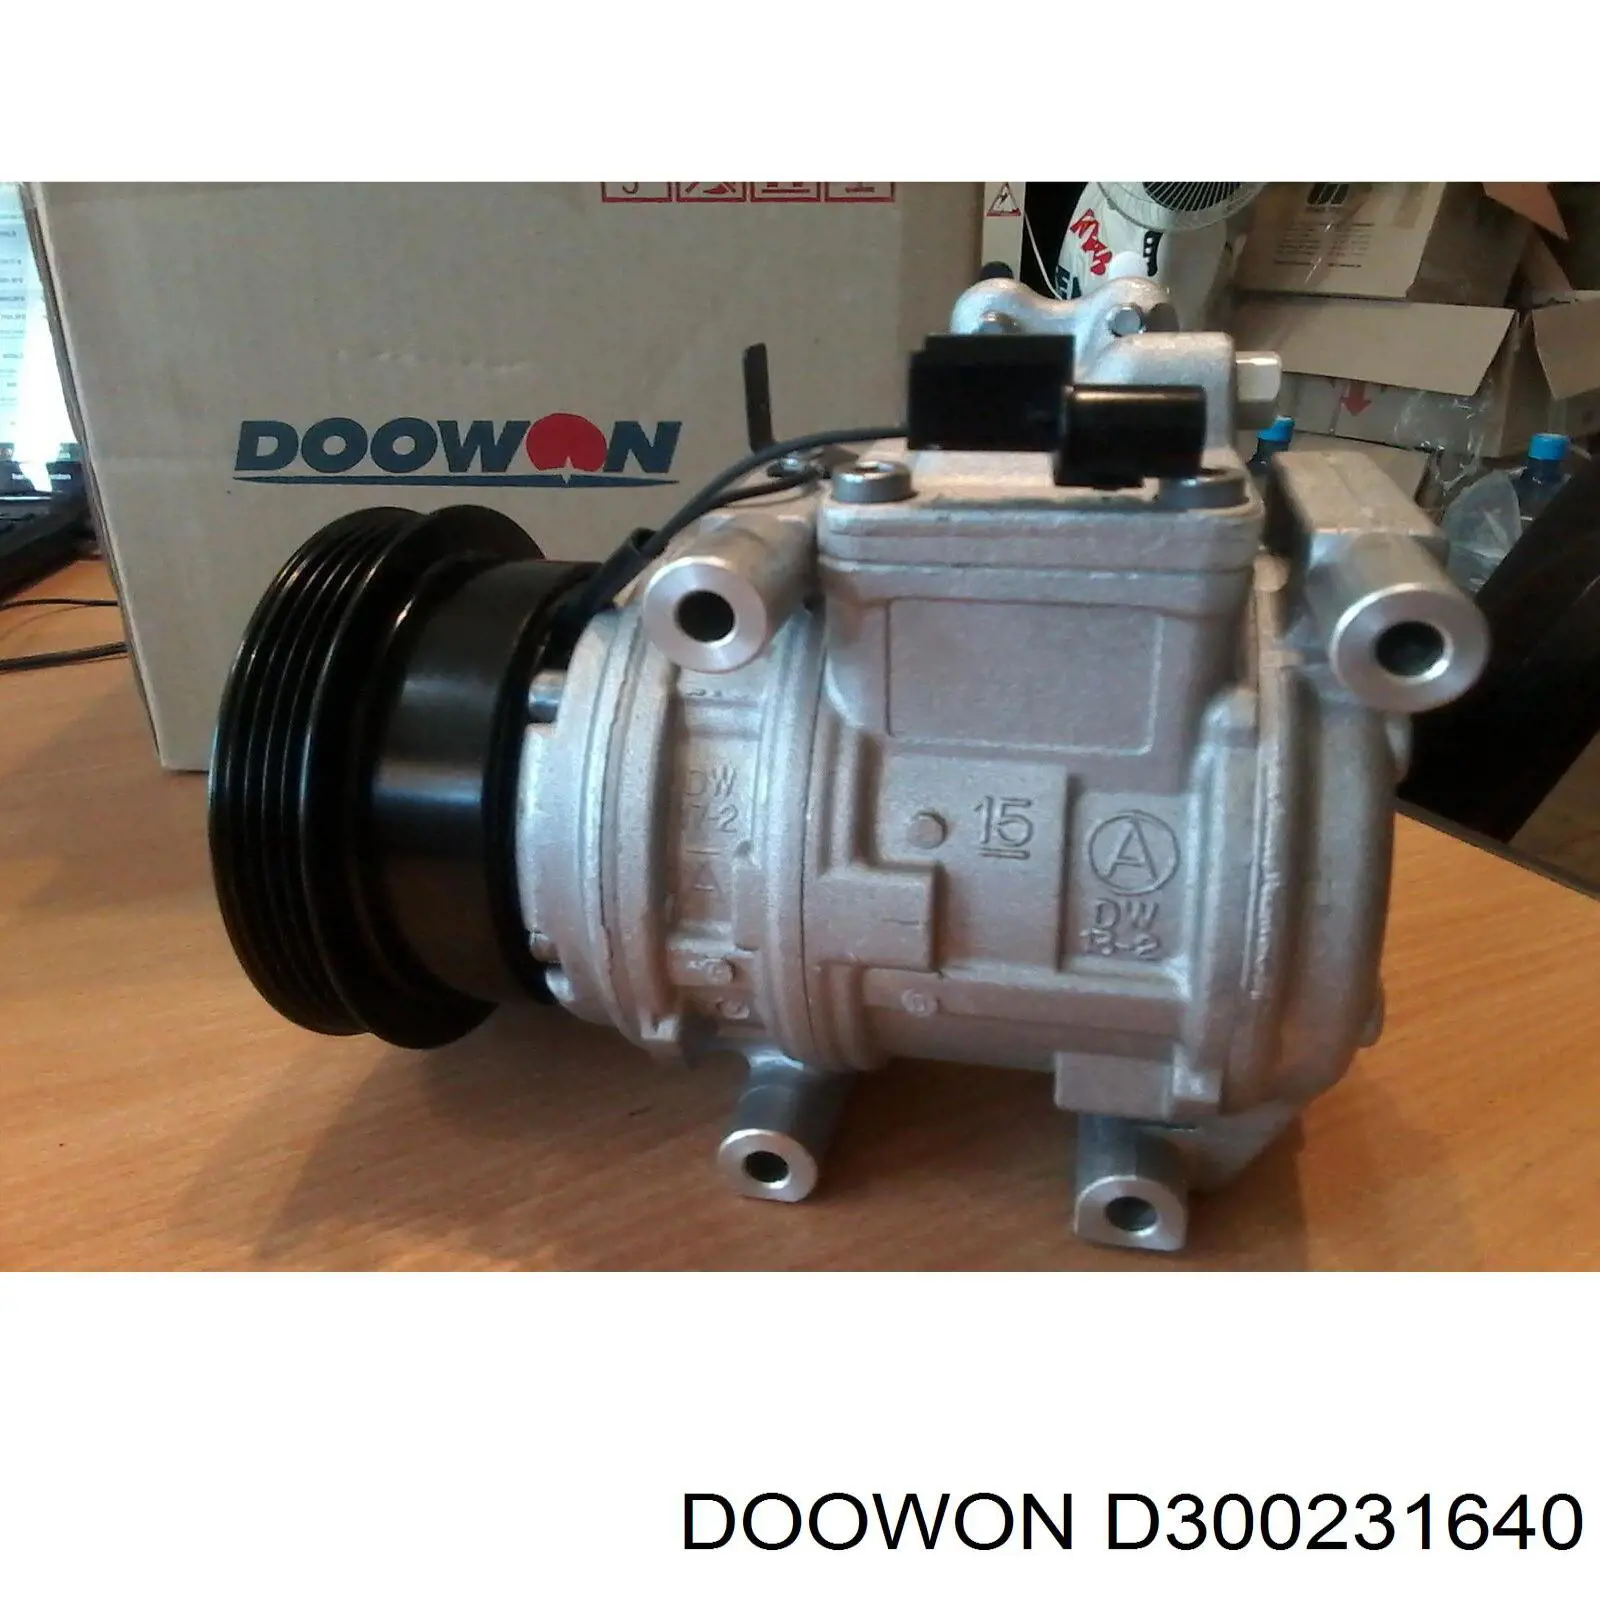 D300231640 Doowon condensador aire acondicionado